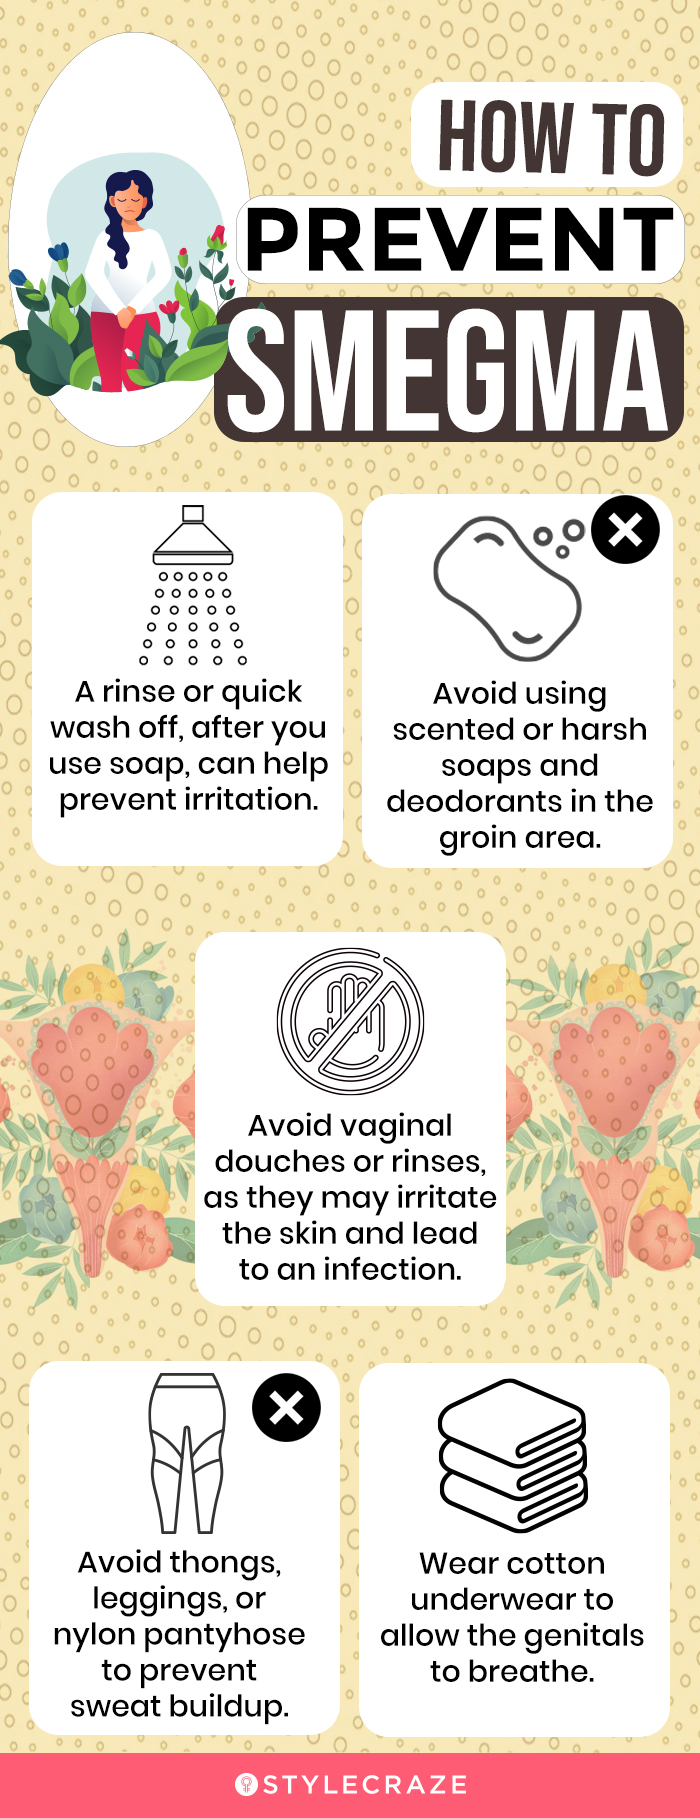 how to prevent smegma (infographic)